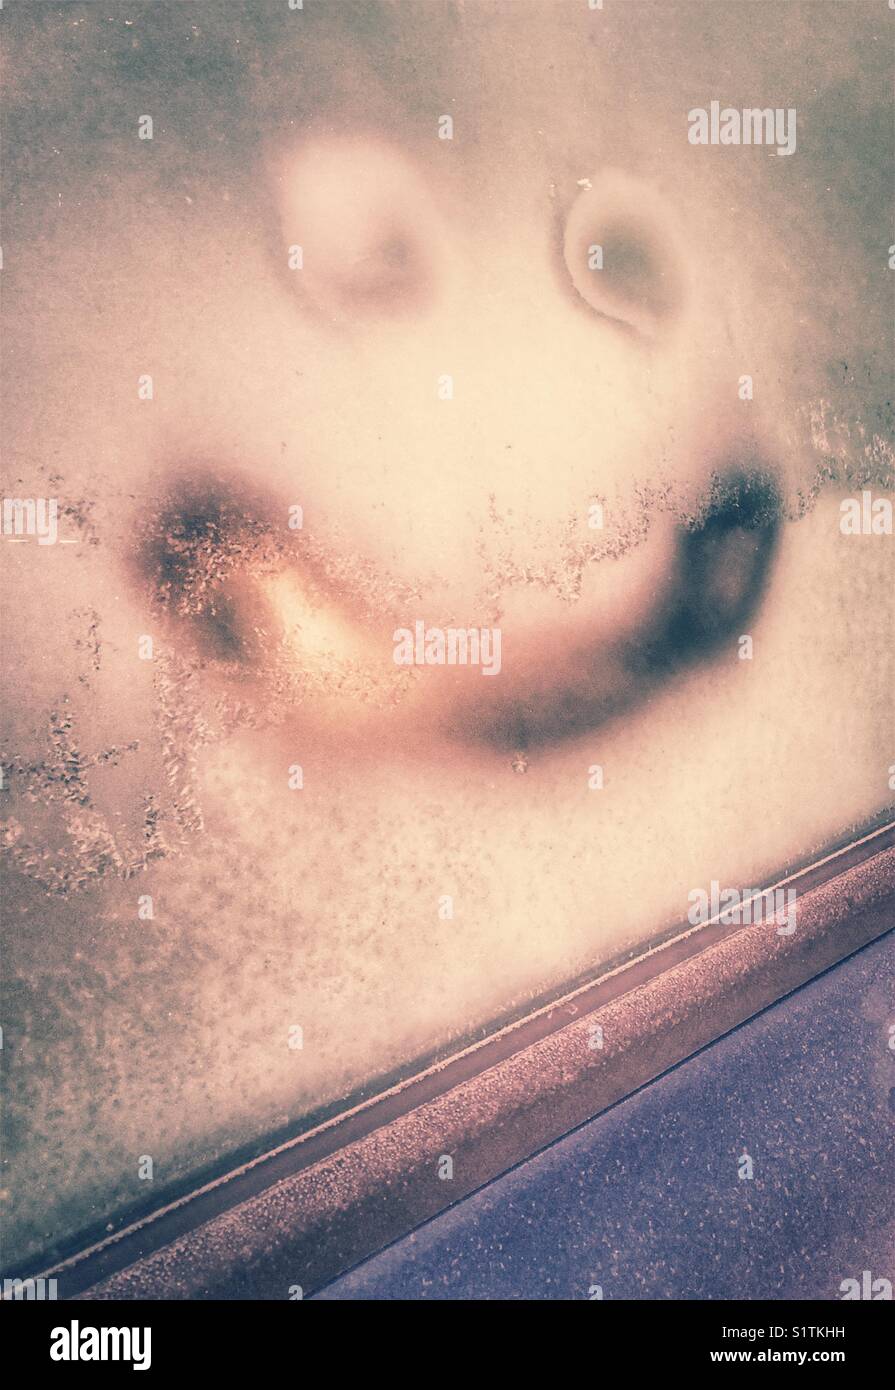 Glückliches Gesicht an einem frostigen Lkw Fenster gezeichnet Stockfoto